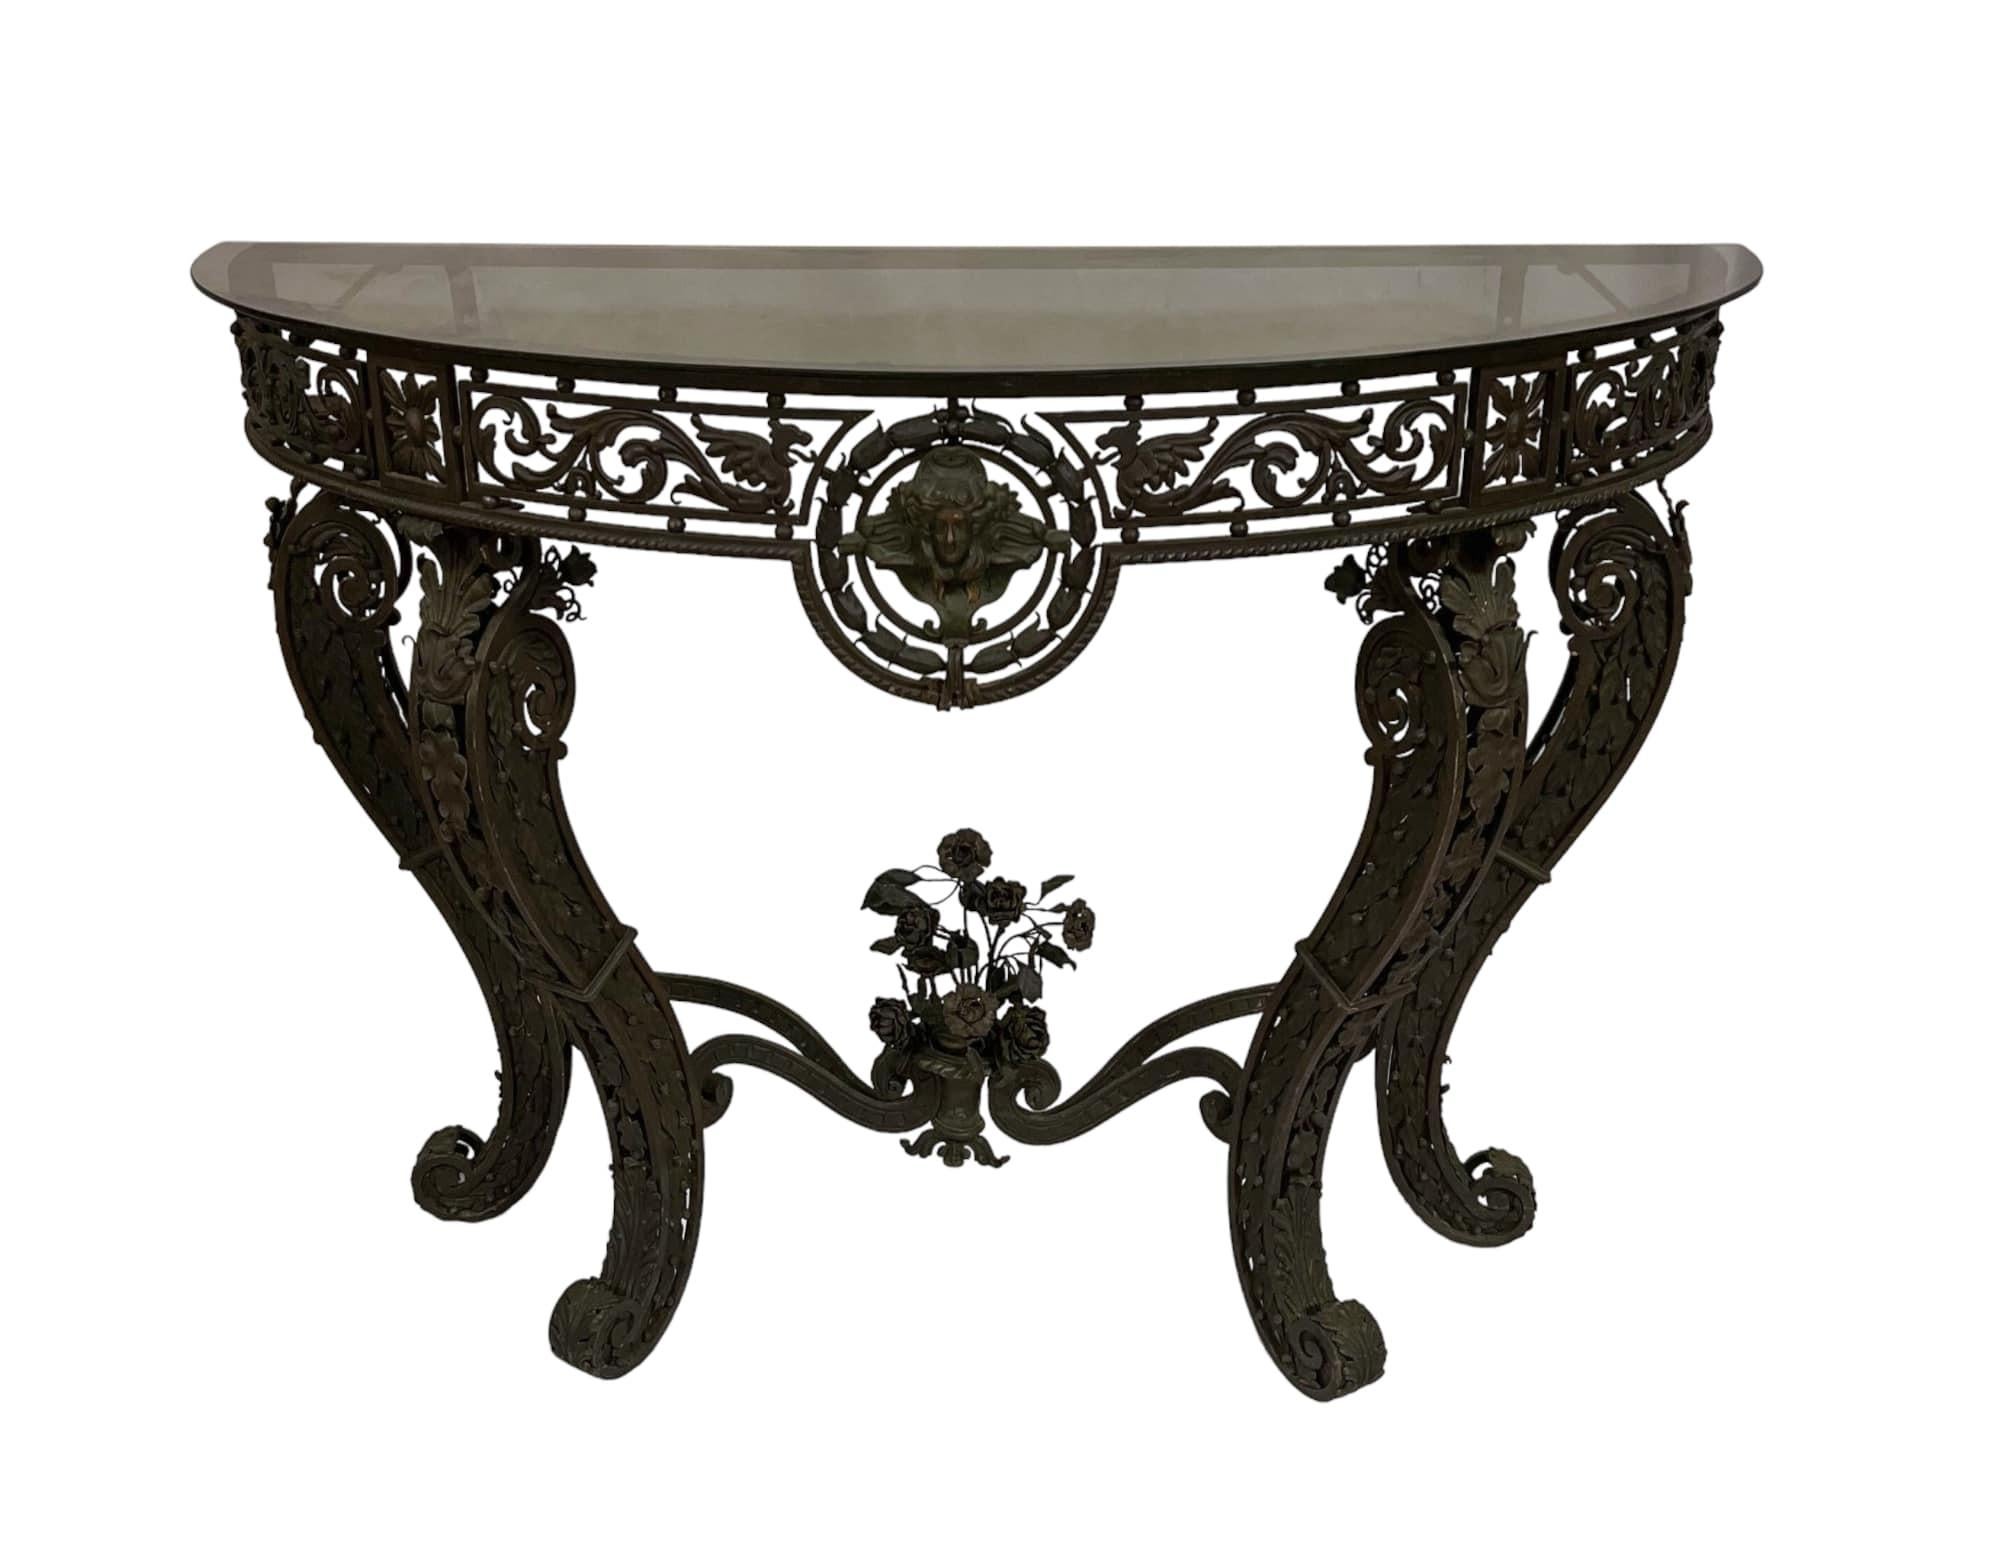 Fabriquée à la main vers 1875 par un artiste du métal formé en Europe, la table console demi-lune en fer forgé ancien est surmontée d'un verre fumé de 1/4 de pouce. Il repose sur des pieds en forme de cabriole, ornés d'une décoration florale en